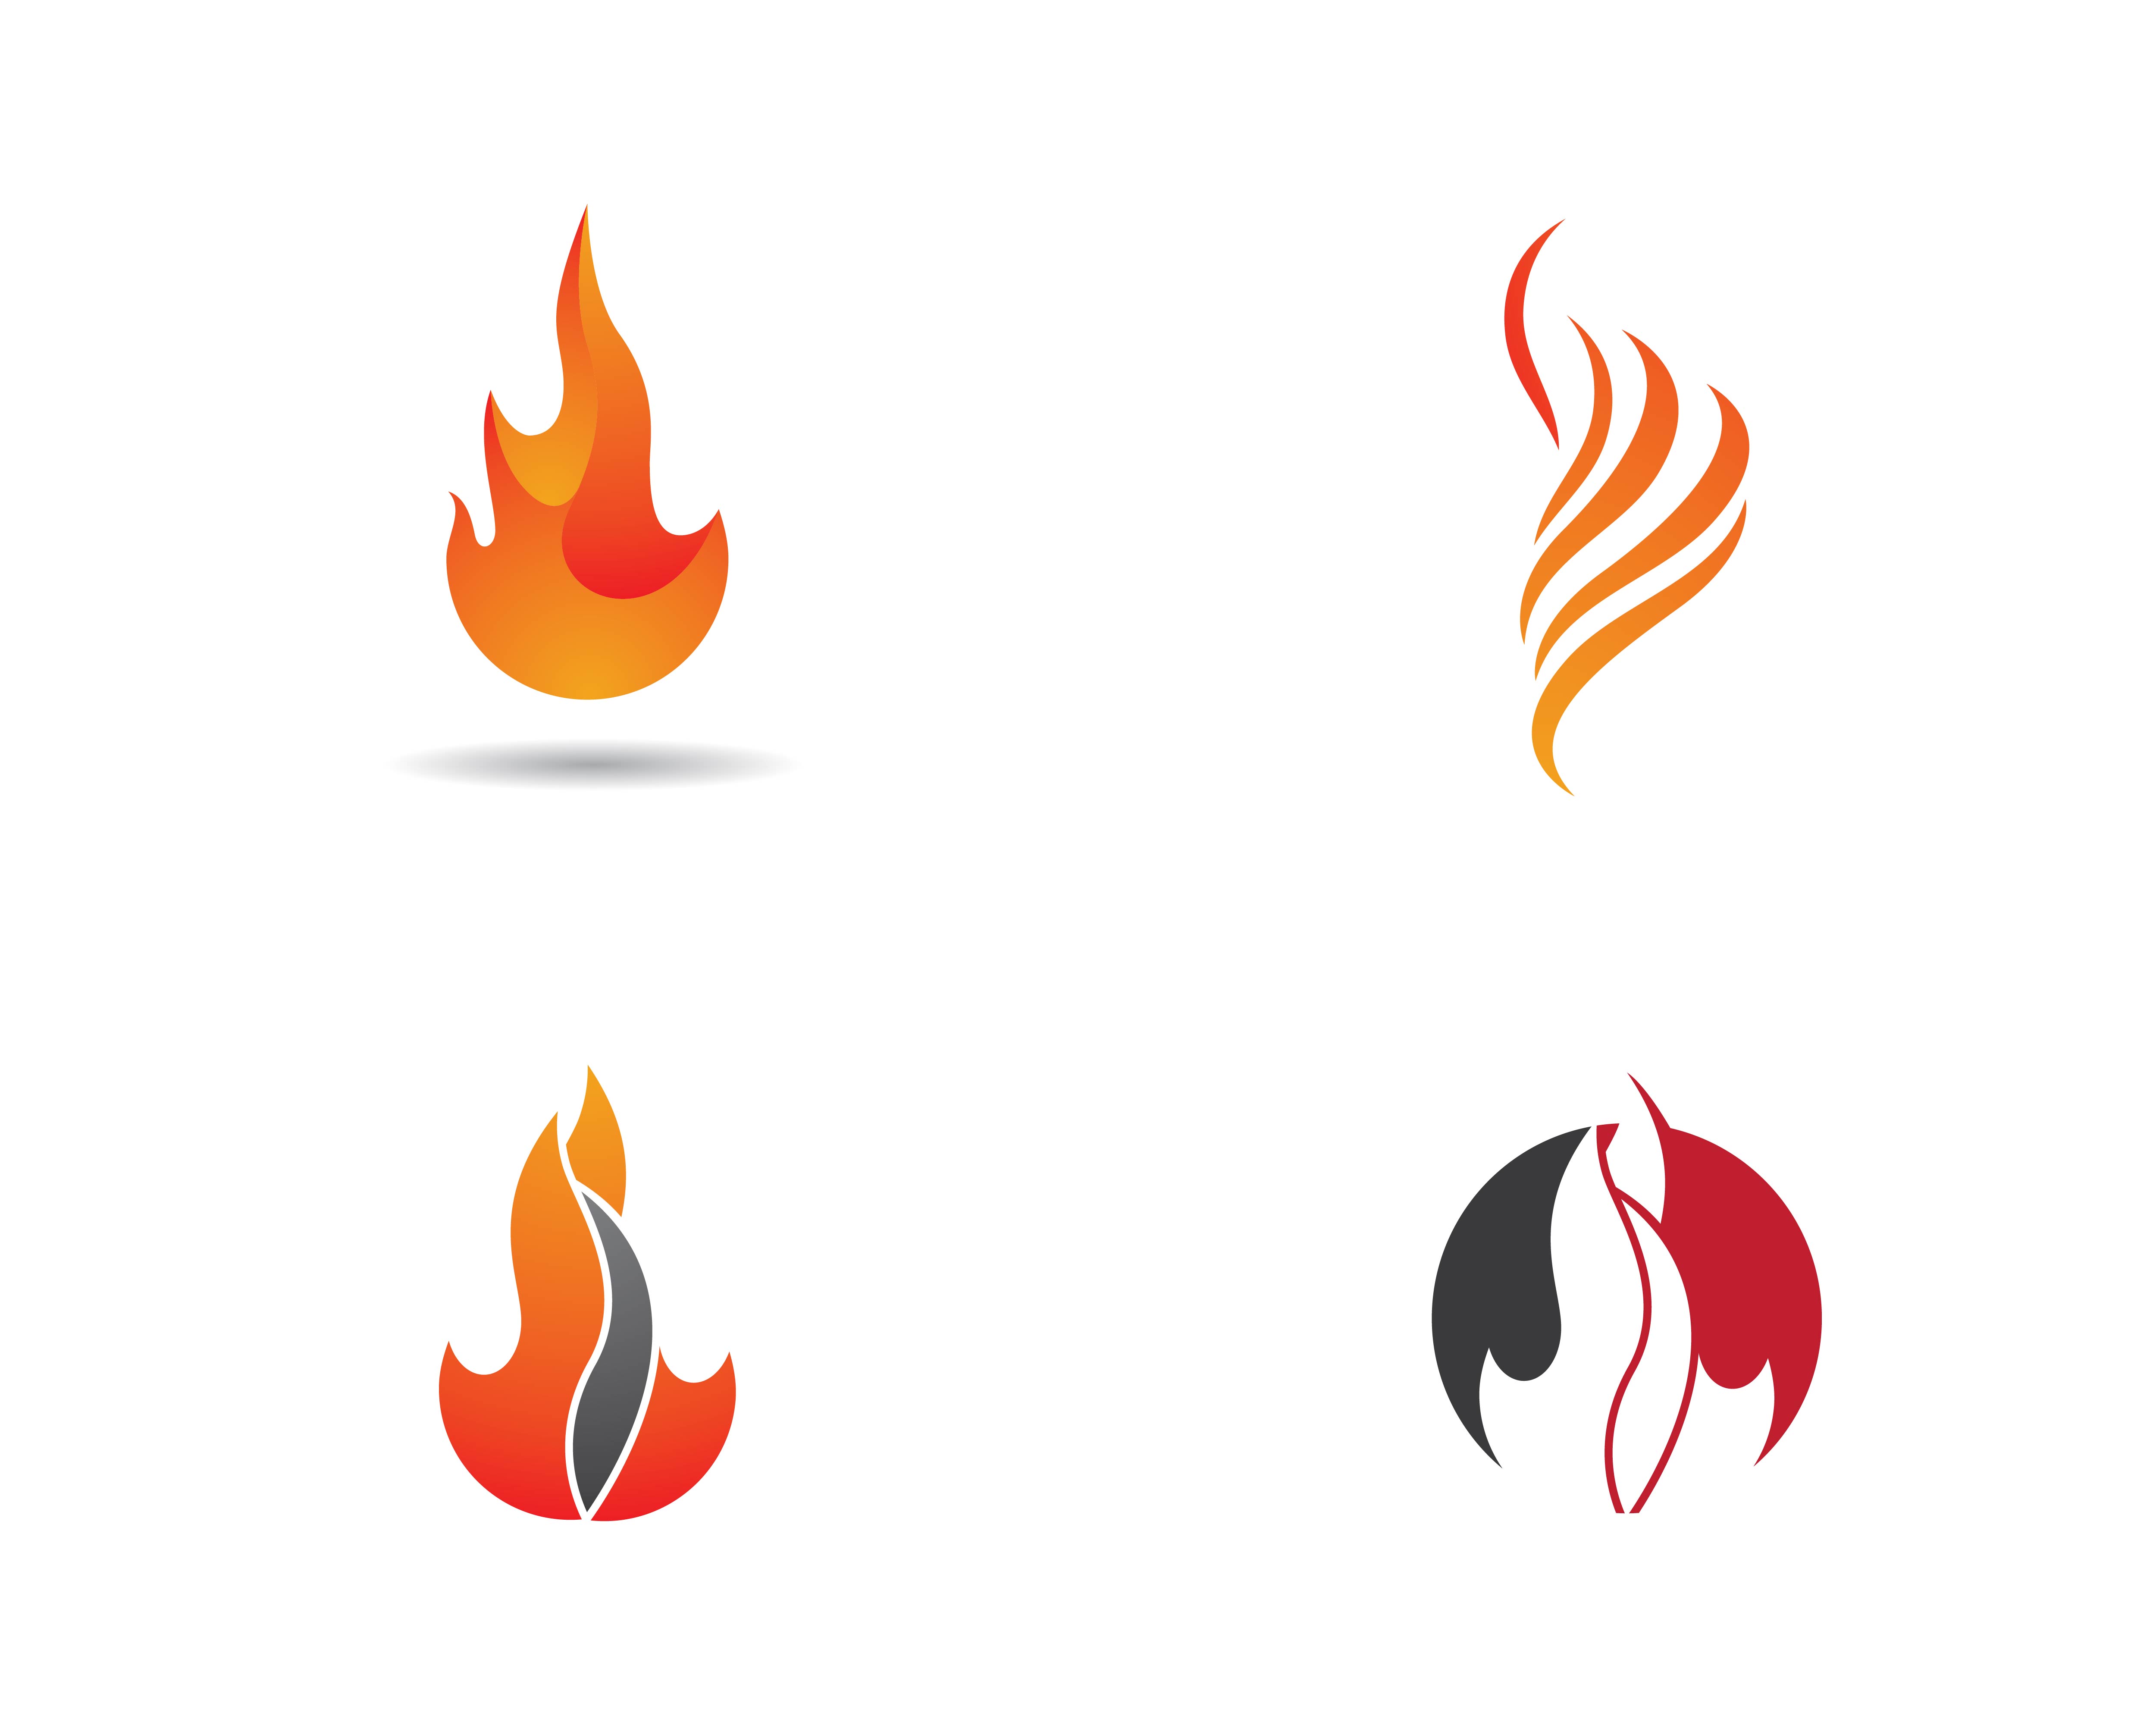 Fire Flame Logo Set Download Free Vectors Clipart Graphics Vector Art